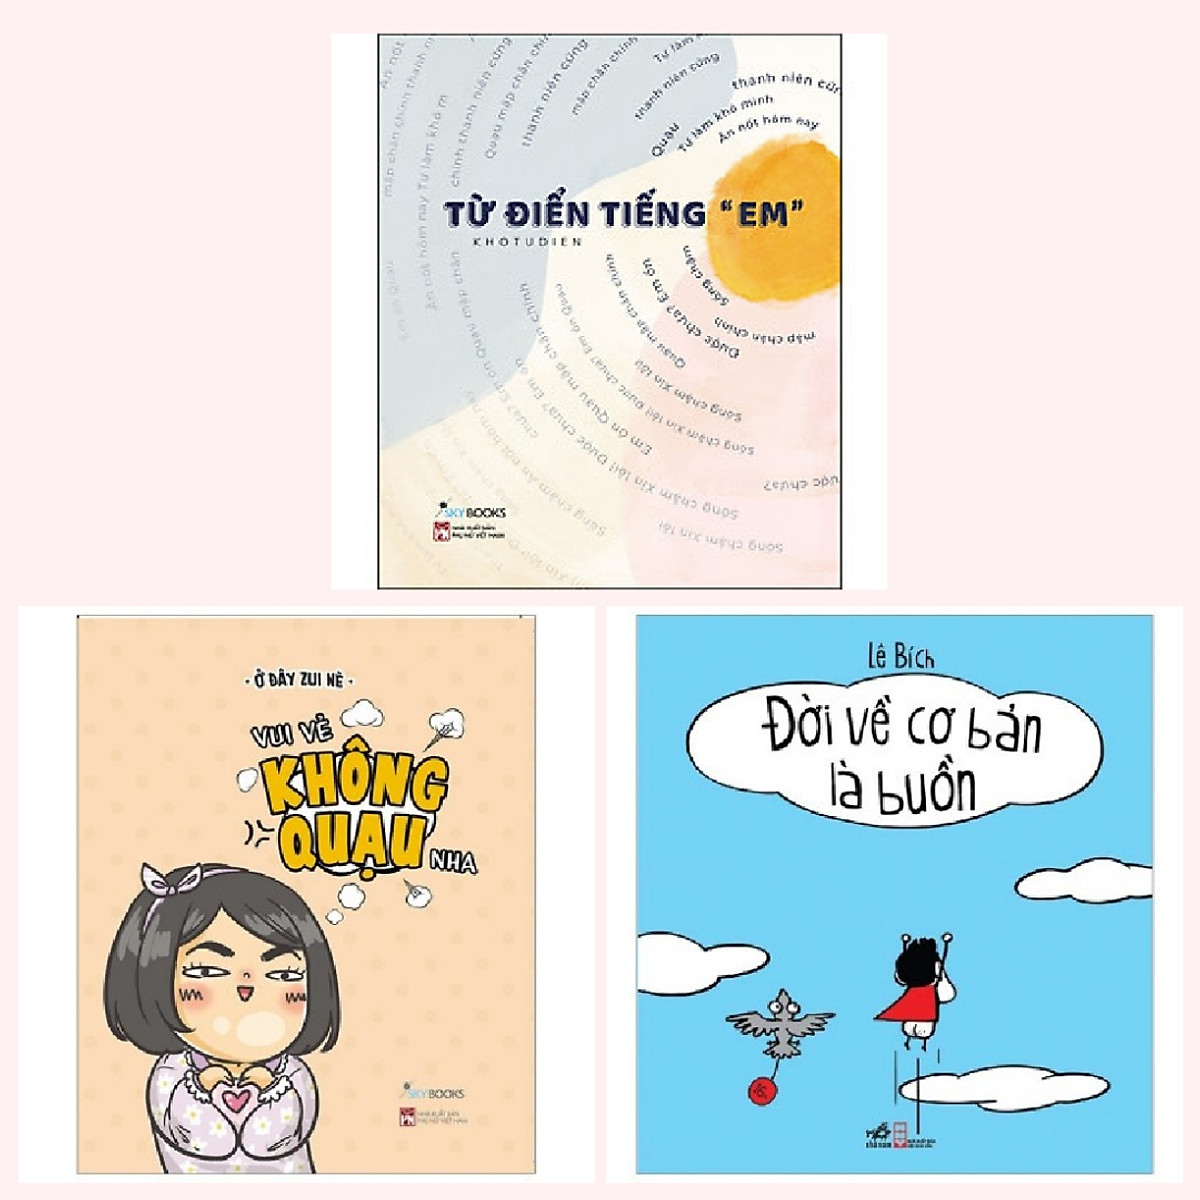 Cobo 3 cuốn: Từ Điển Tiếng “Em” + Vui Vẻ Không Quạu Nha + Đời Về Cơ Bản Là Buồn Cười + Bookmark happy